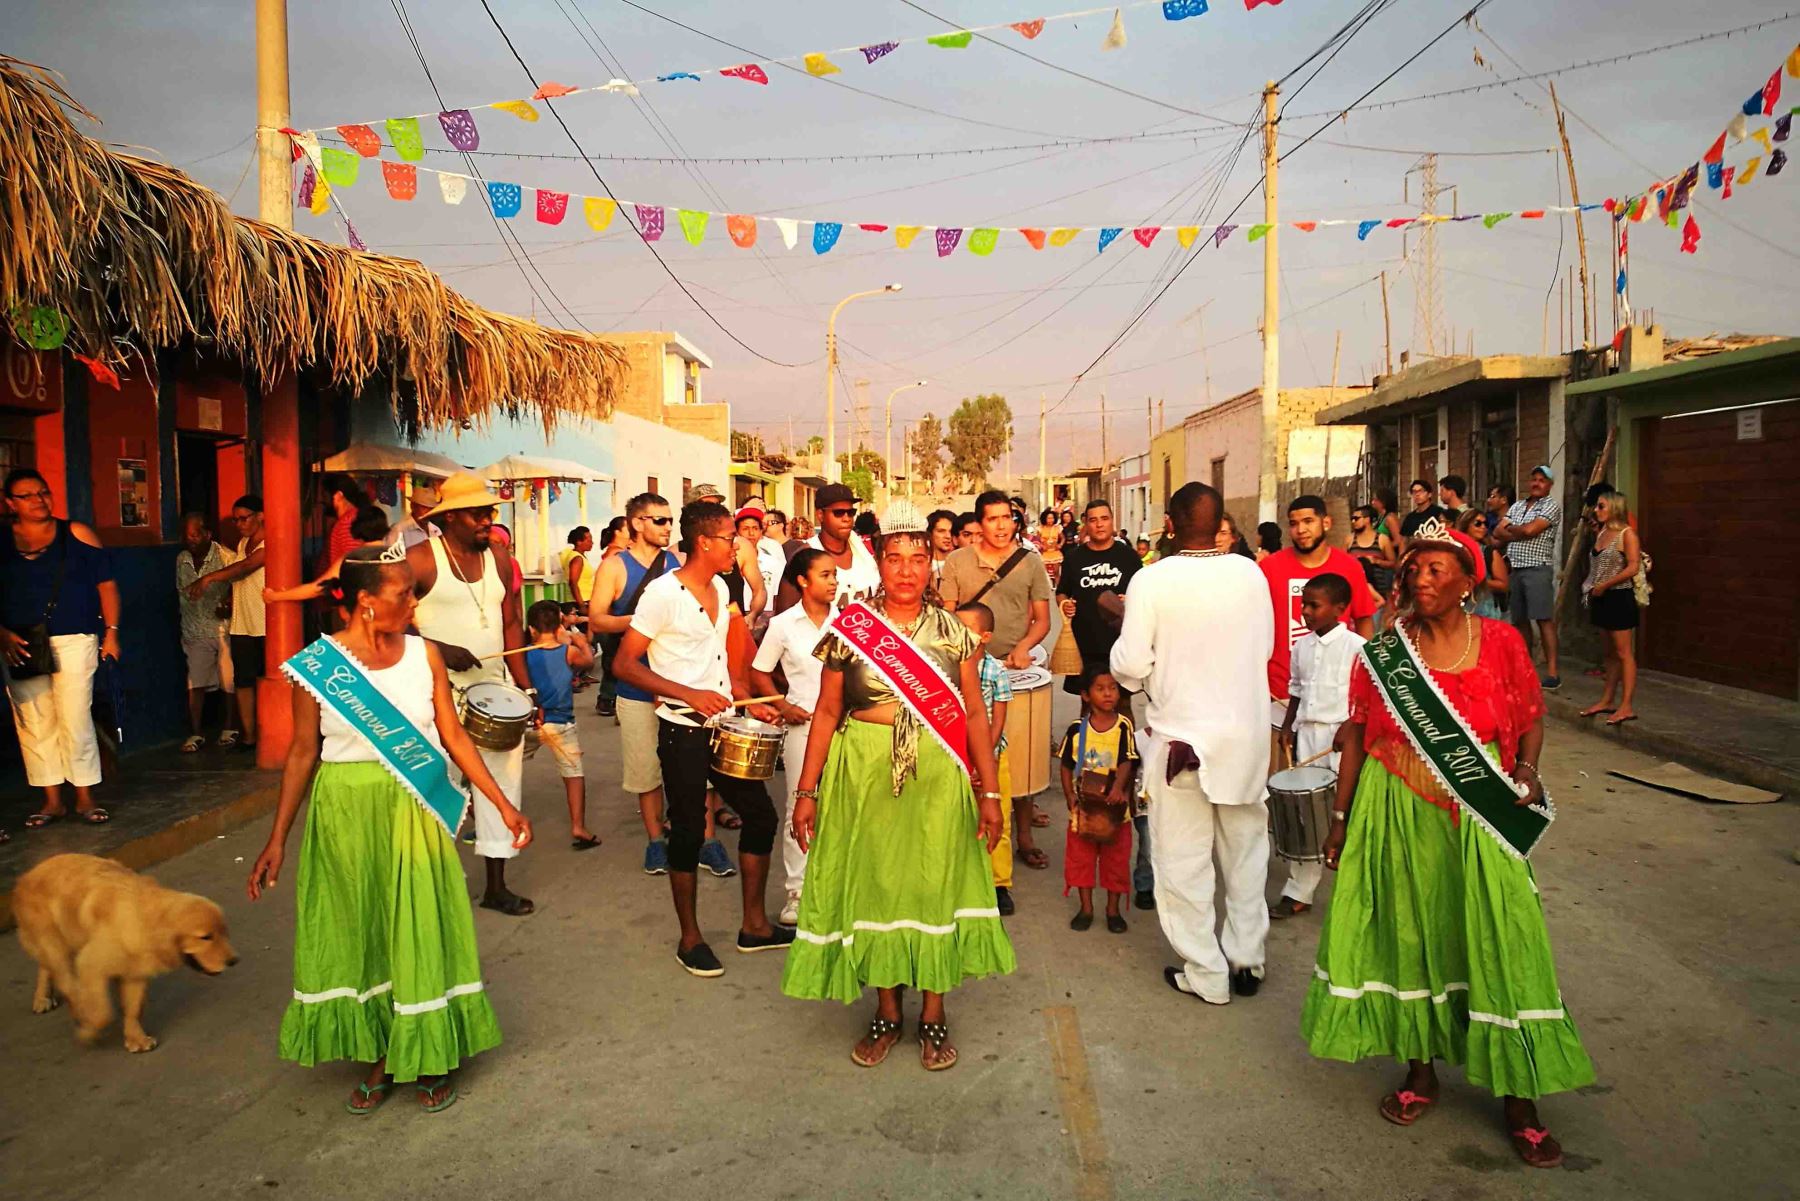 La celebración de los carnavales que se apodera de todo el Perú tiene en el centenario distrito de El Carmen, en la provincia iqueña de Chincha, al mayor representante del arte afroperuano que se ofrecerá a los visitantes nacionales y extranjeros en el “Carnaval Negro 2018”.